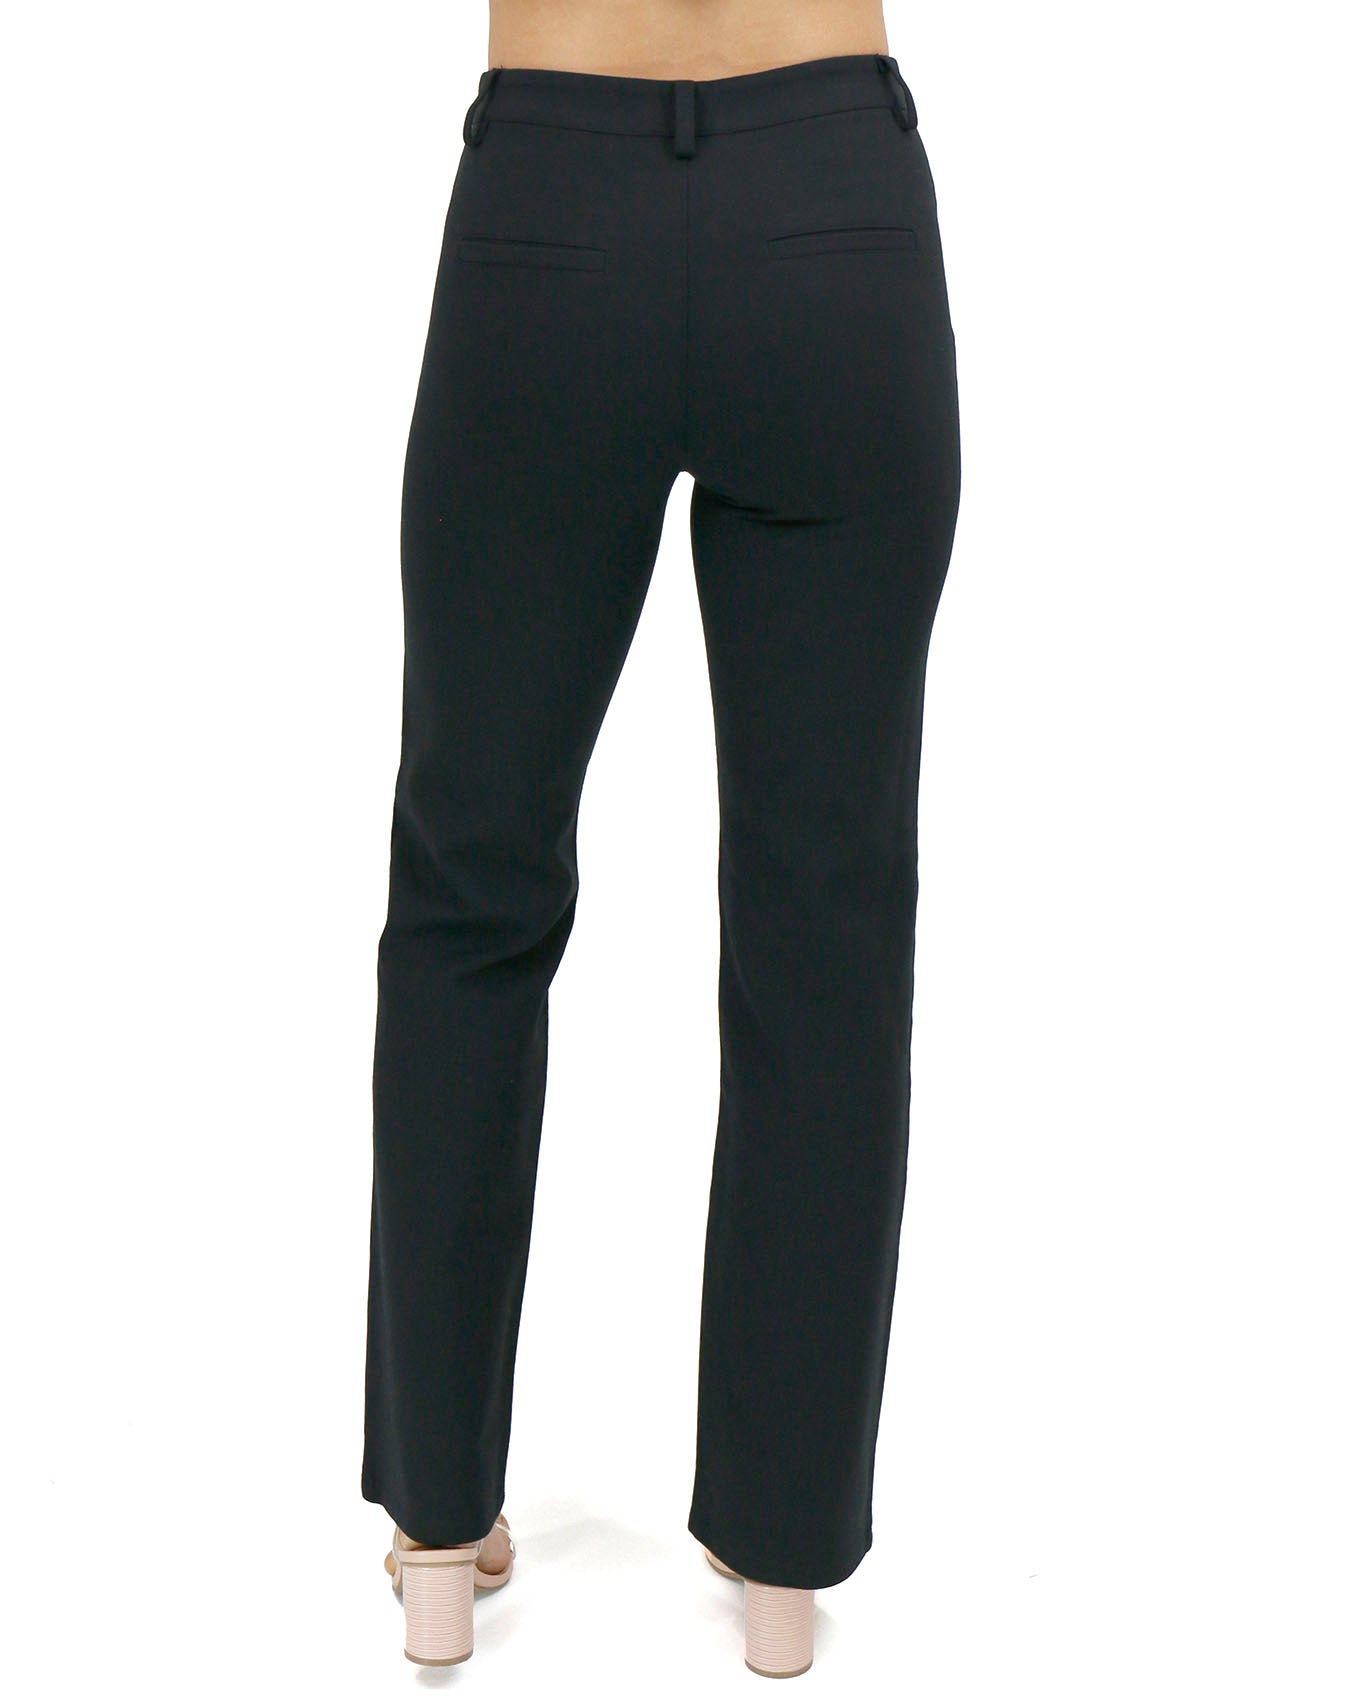 Brilliant Basics Women's Regular Length Straight Work Pant - Black.